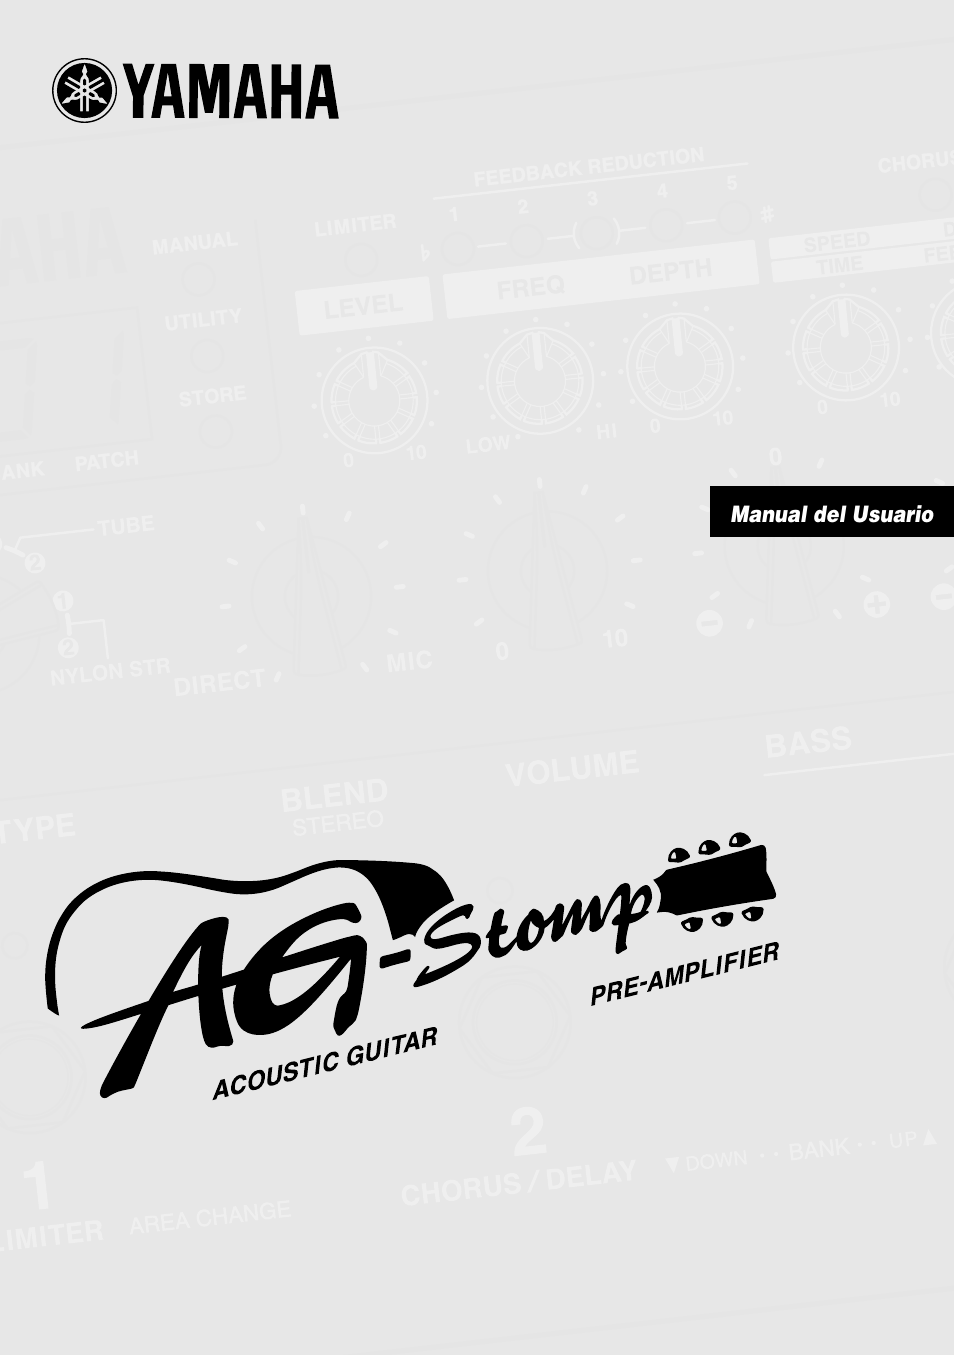 Yamaha AG-Stomp Manual del usuario | Páginas: 32